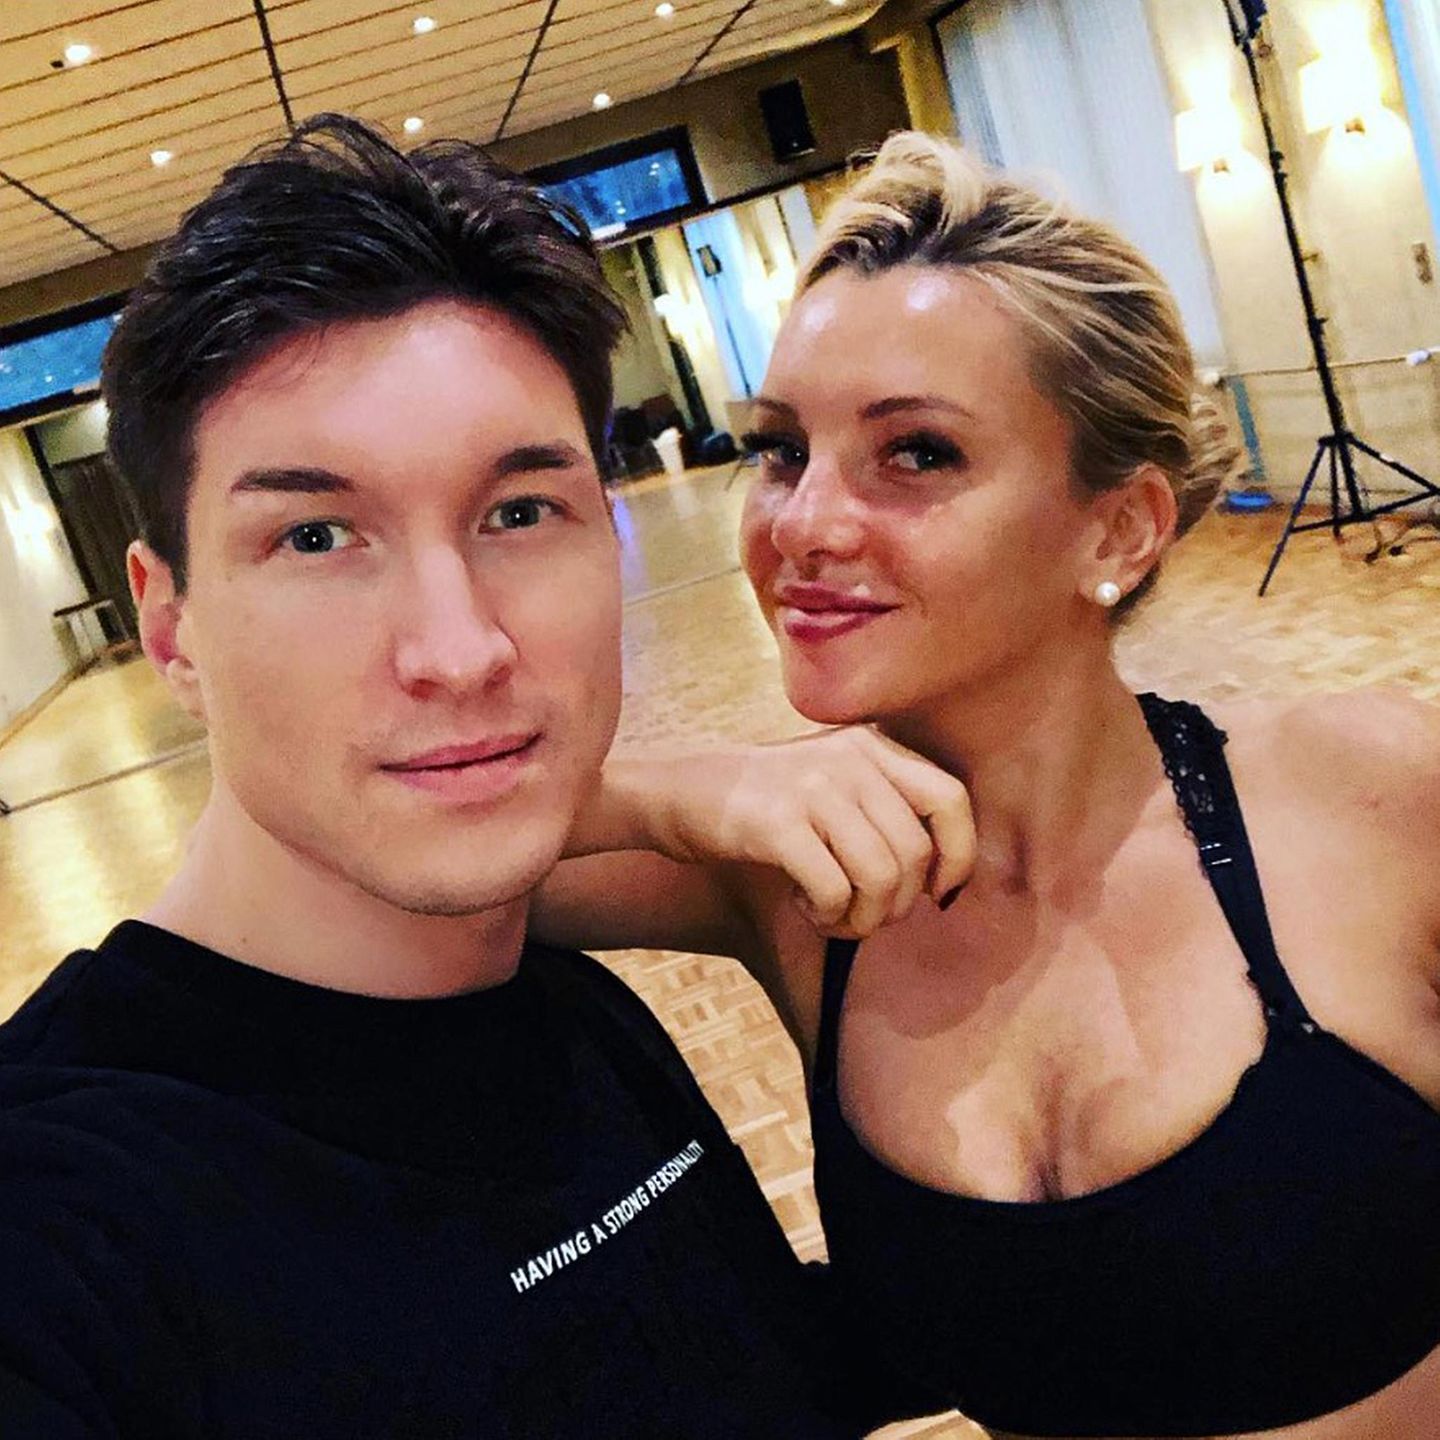 Nach dem ersten Trainingstag mit viel Tanz und Gelächter ist Profitänzer Evgeny Vinokurov schon sehr stolz auf Evelyn Burdecki.